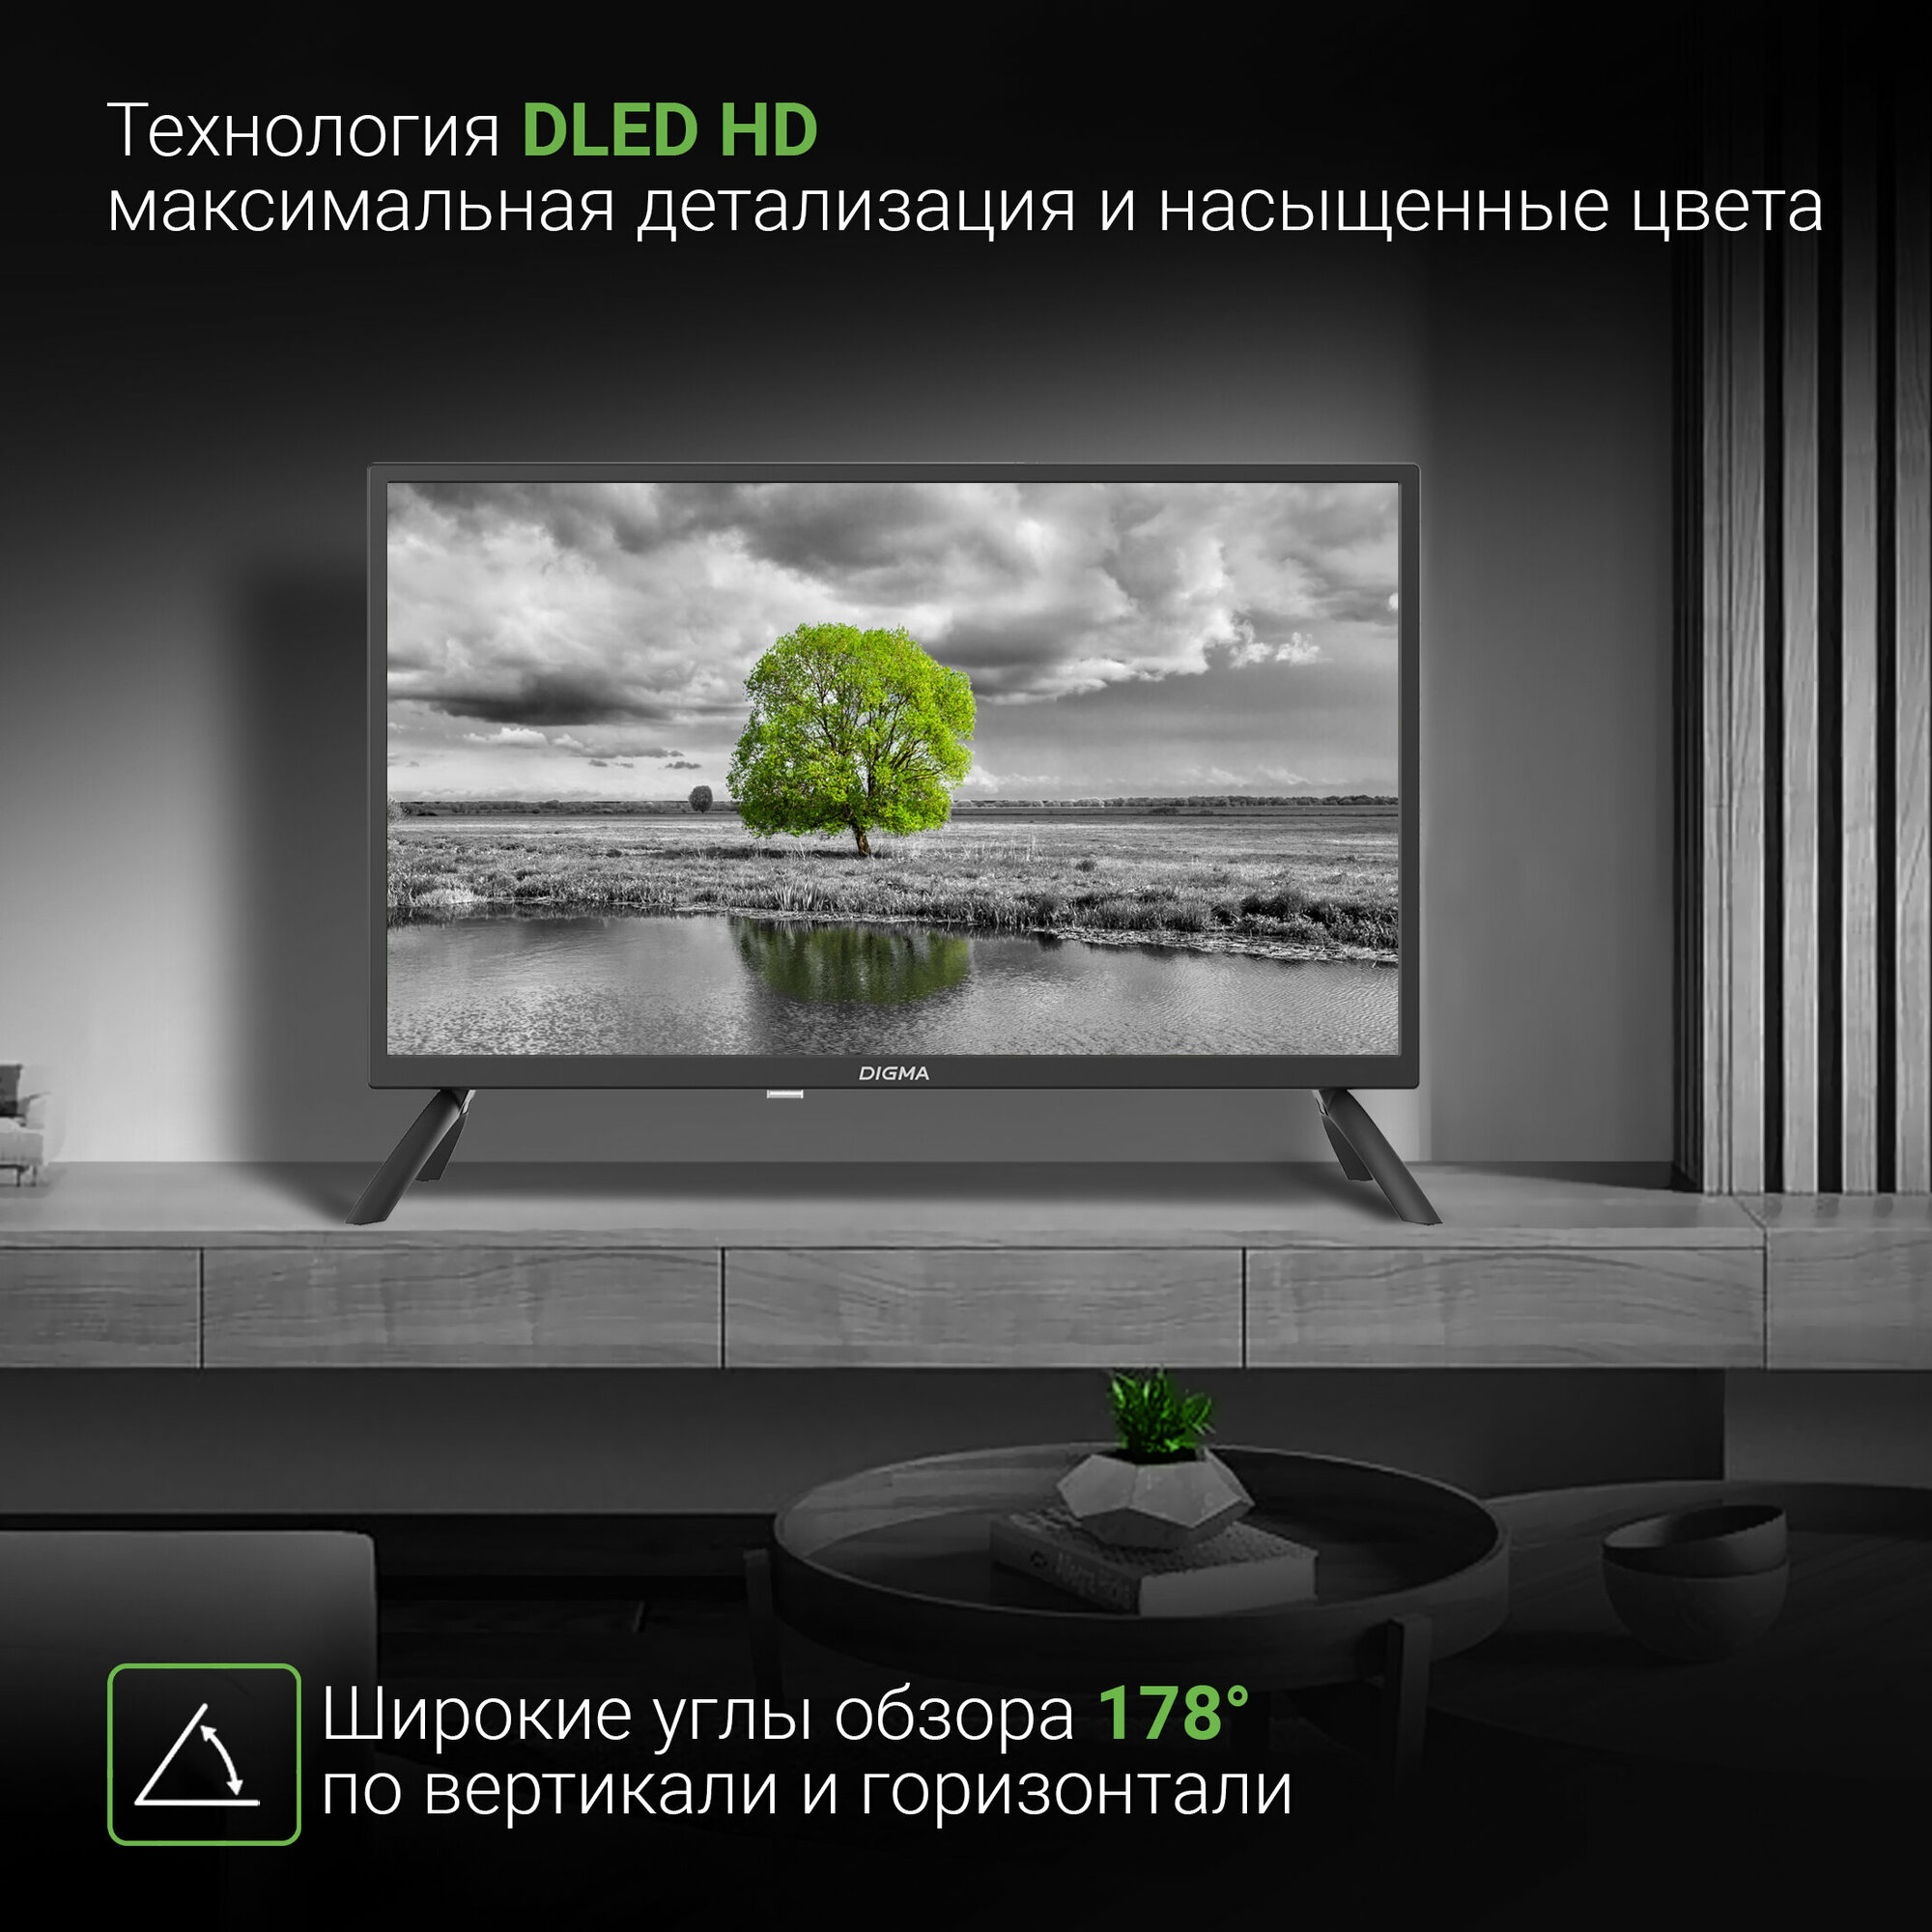 Телевизор Digma Яндекс.ТВ DM-LED24SBB31, 24", LED, HD, Яндекс.ТВ, черный - фото №8